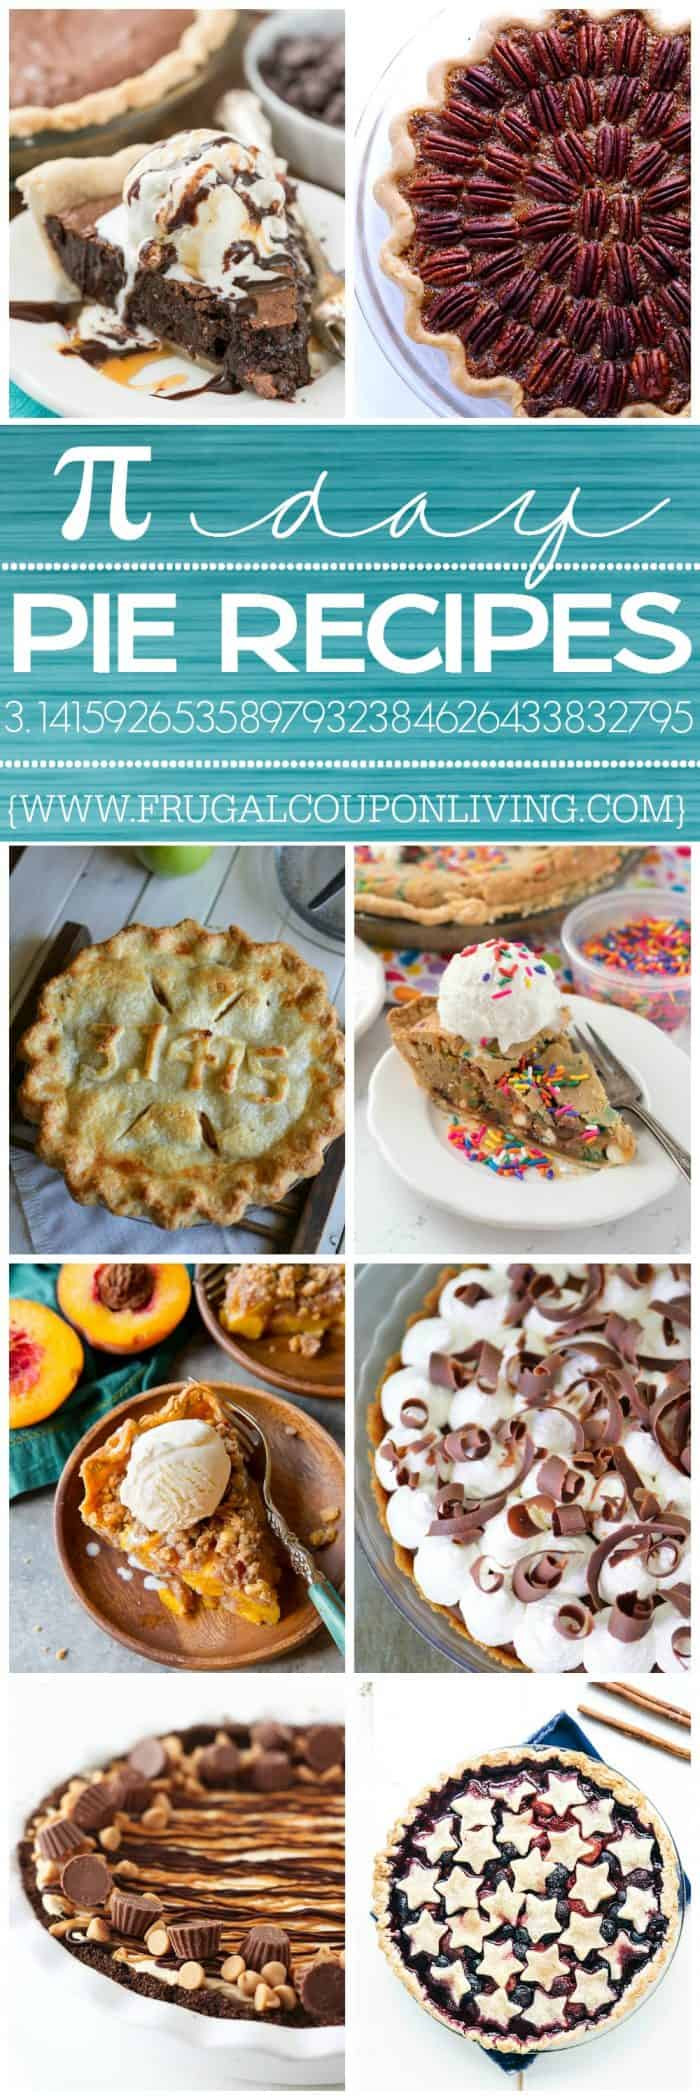 Pi Day Pie Recipe
 Pi Day Recipes Pie Ideas for March 14th